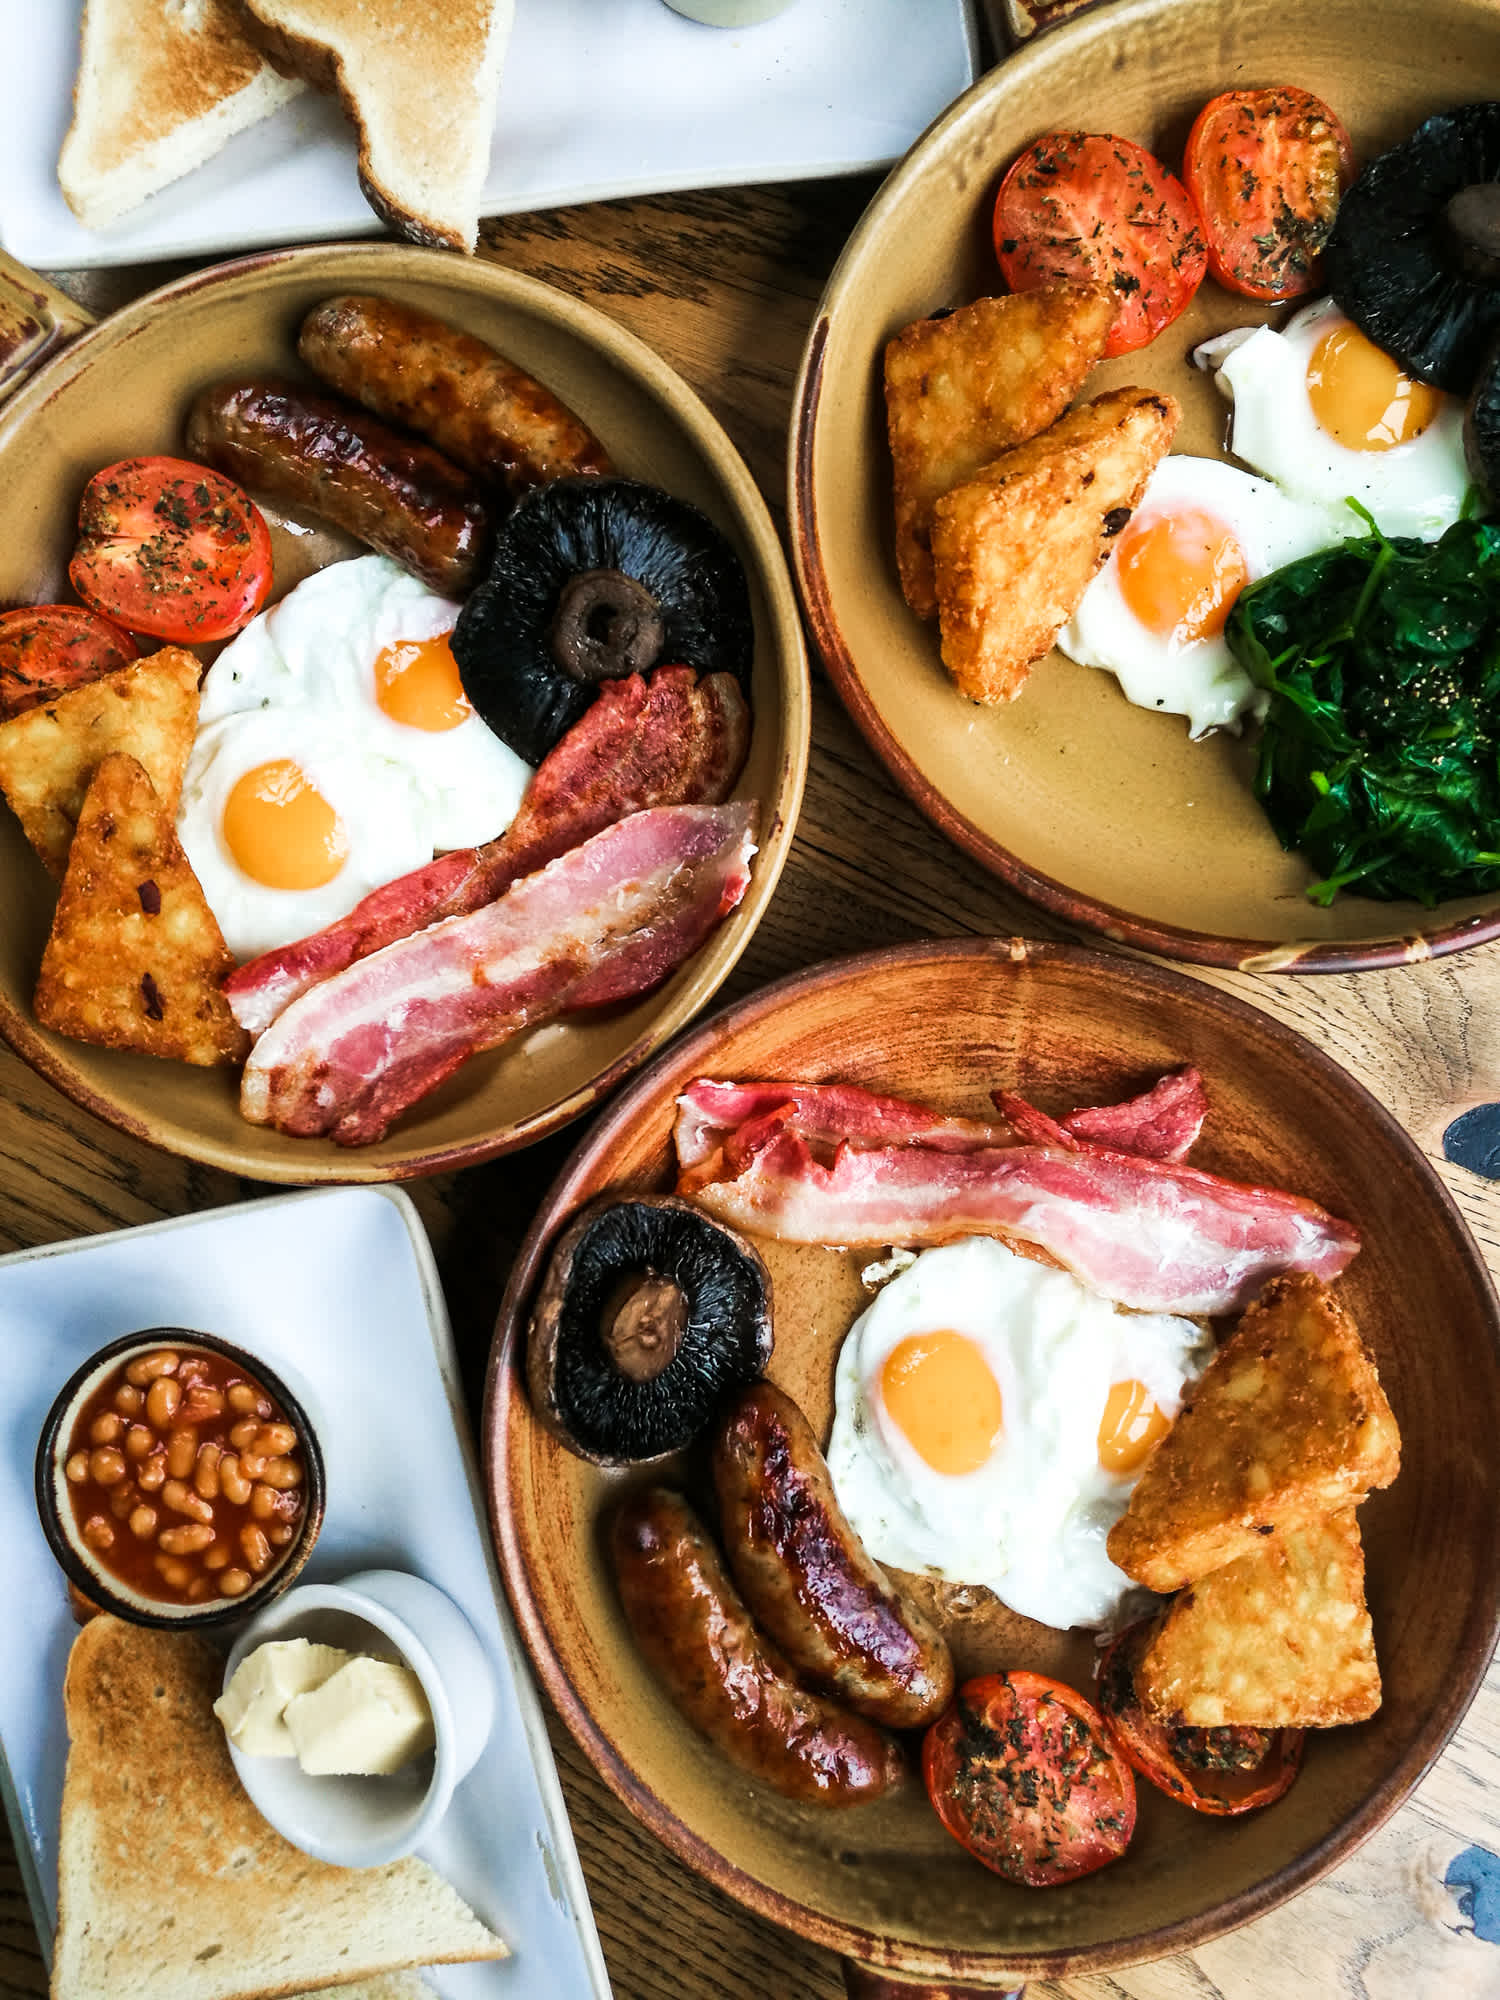 Plusieurs assiettes avec au menu le fameux English Breakfast, grande spécialité du petit-déjeuner anglais à déguster pendant votre séjour en Angleterre.